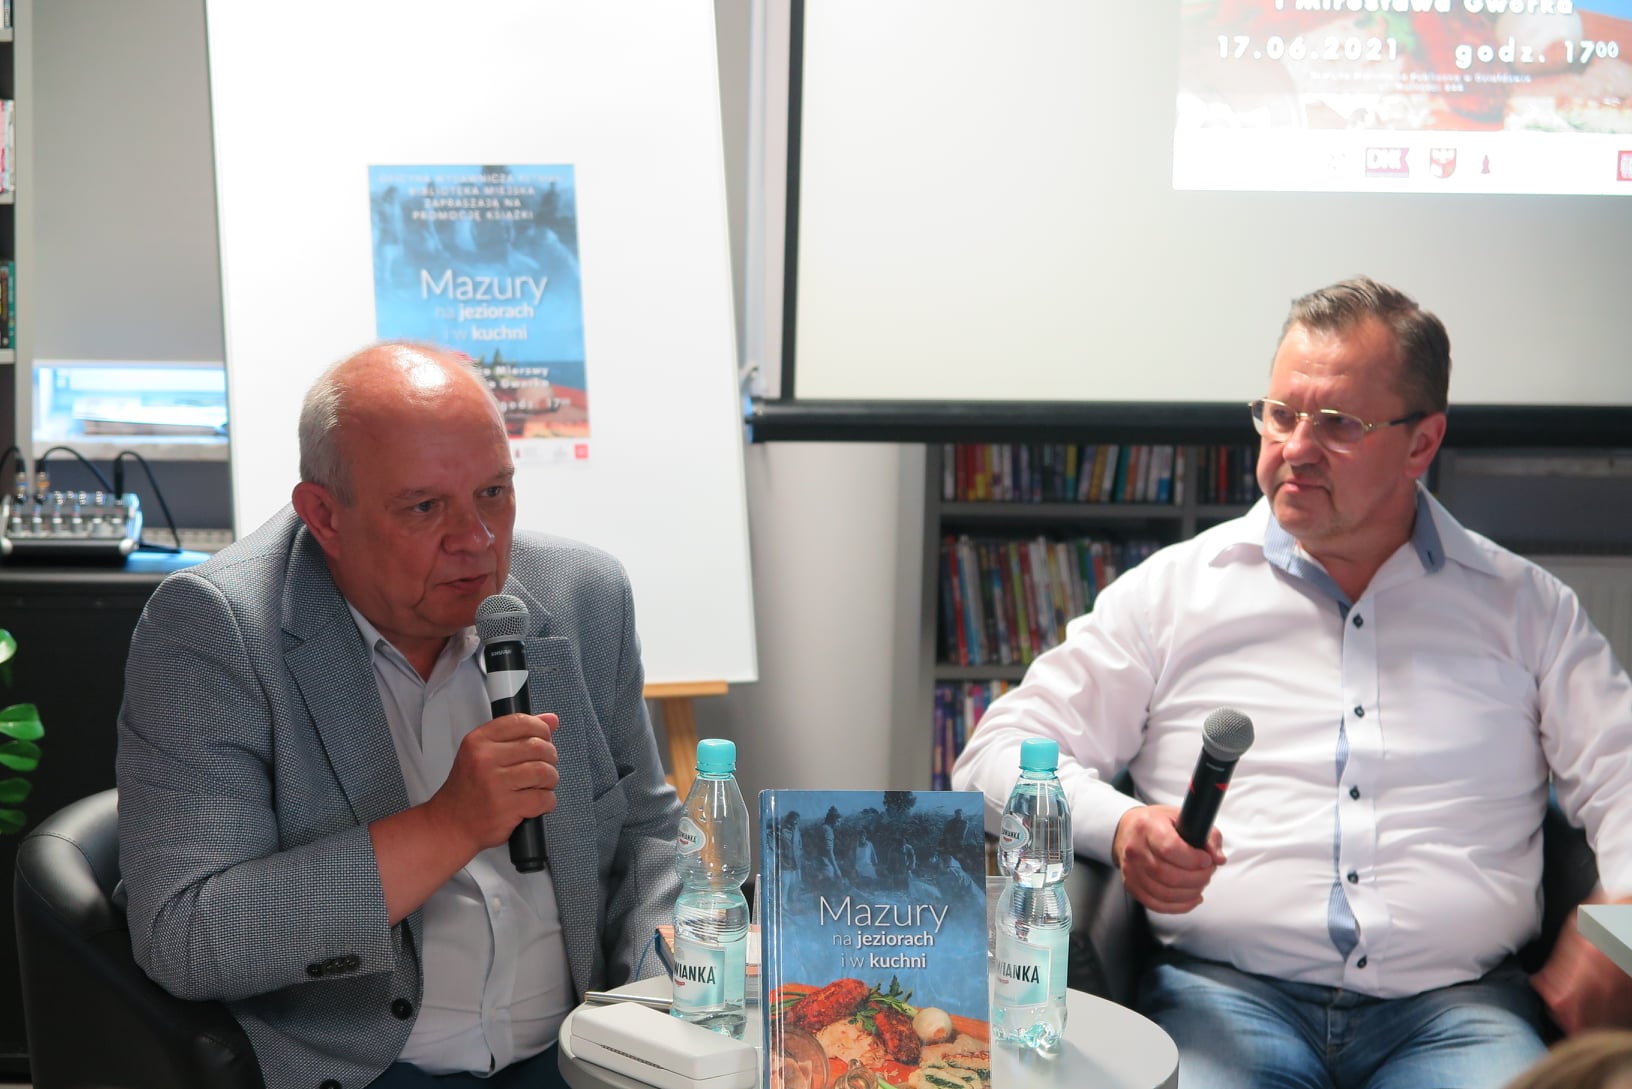 Pomieszczenie biblioteki, przy stoliku siedzą Waldemar Mierzwa i Mirosław Gworek. Waldemar Mierzwa mówi do mikrofonu, który trzyma w dłoni. Na stoliku stoi książka jego autorstwa "Mazury na jeziorach i w kuchni".